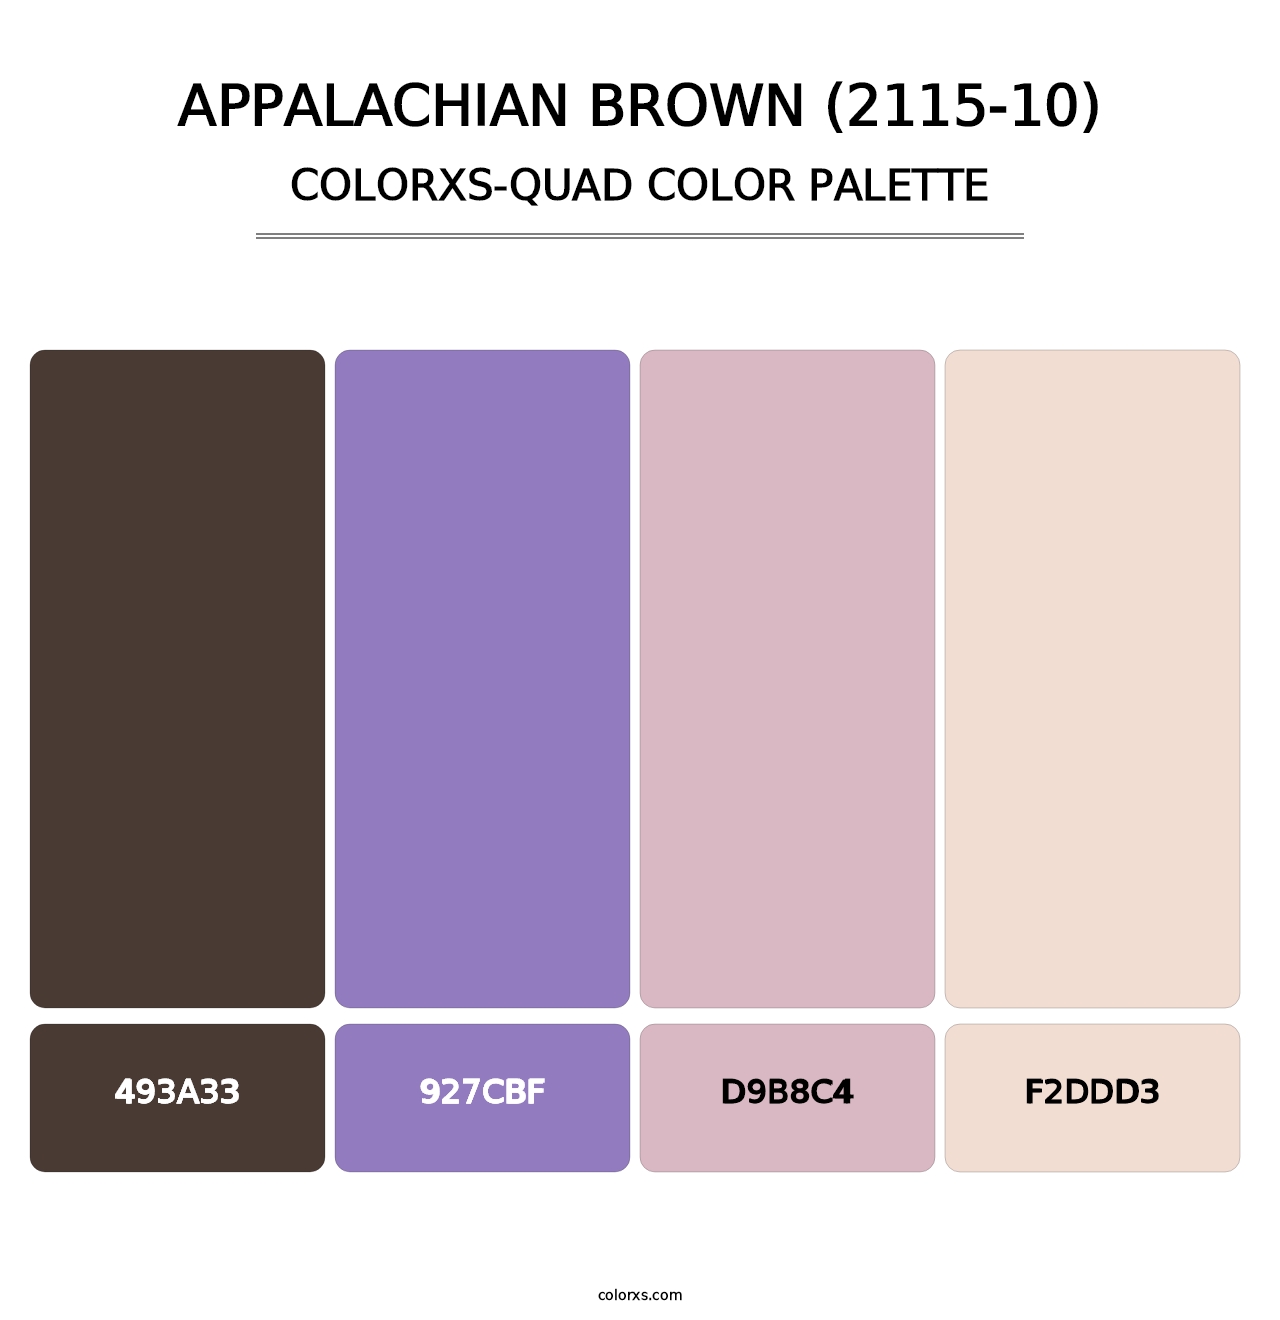 Appalachian Brown (2115-10) - Colorxs Quad Palette